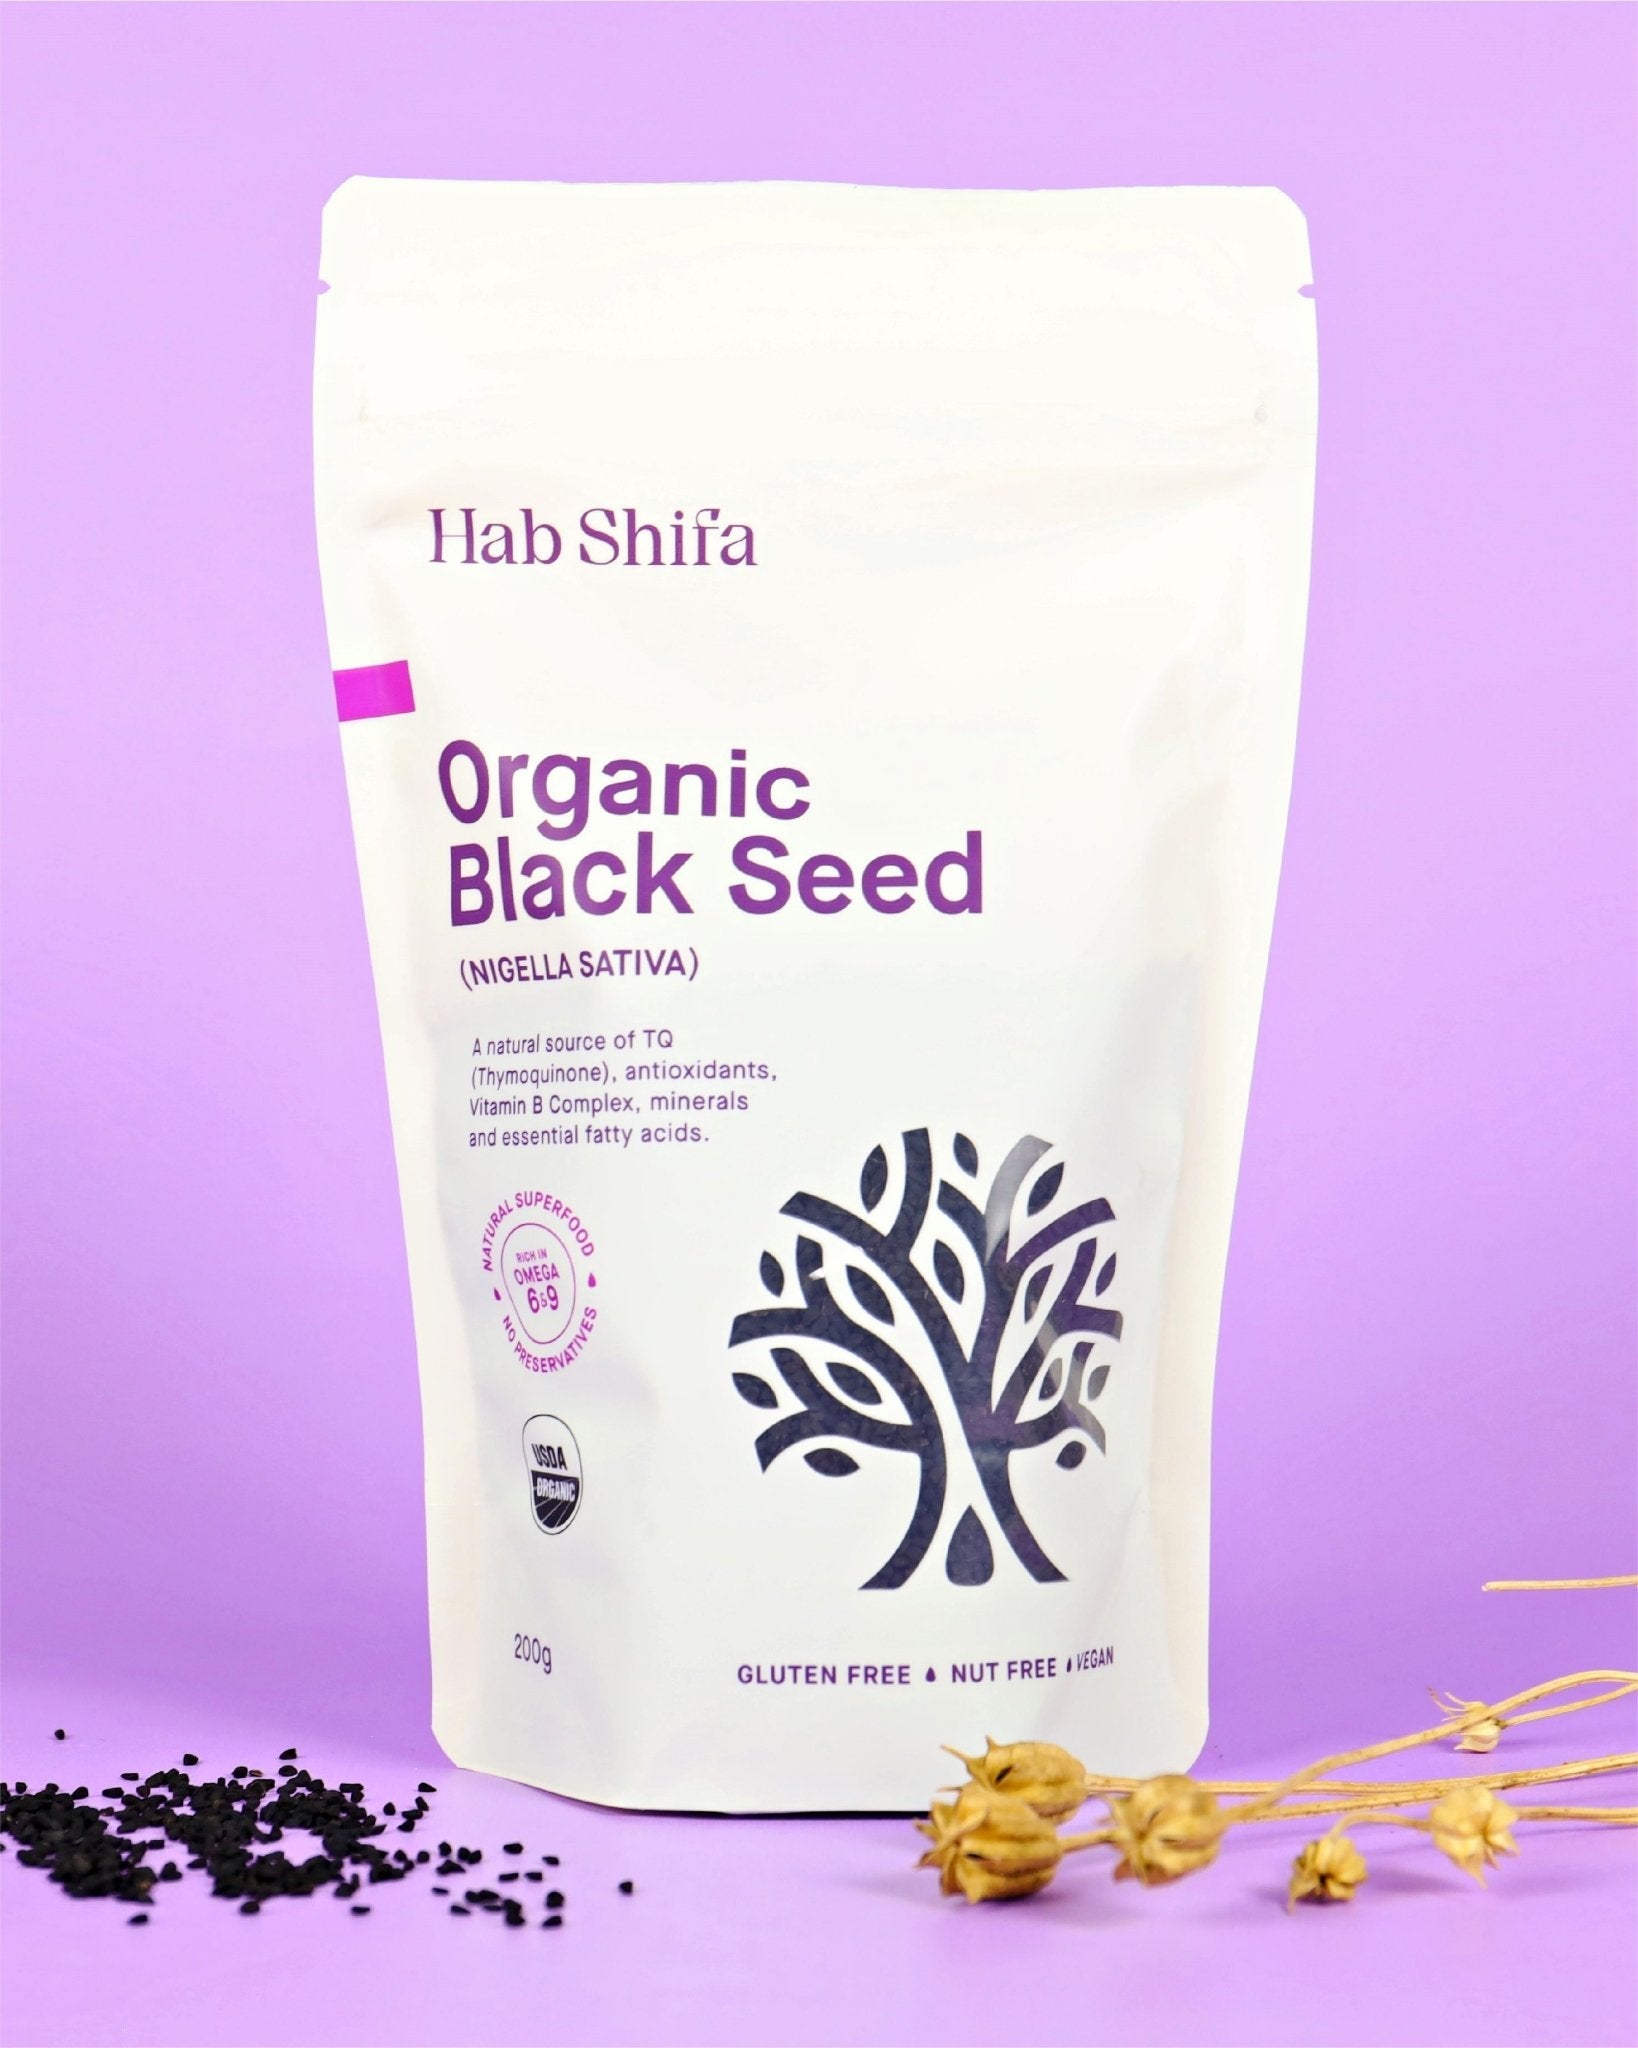 Organic Black Seed Pack - Hab Shifa